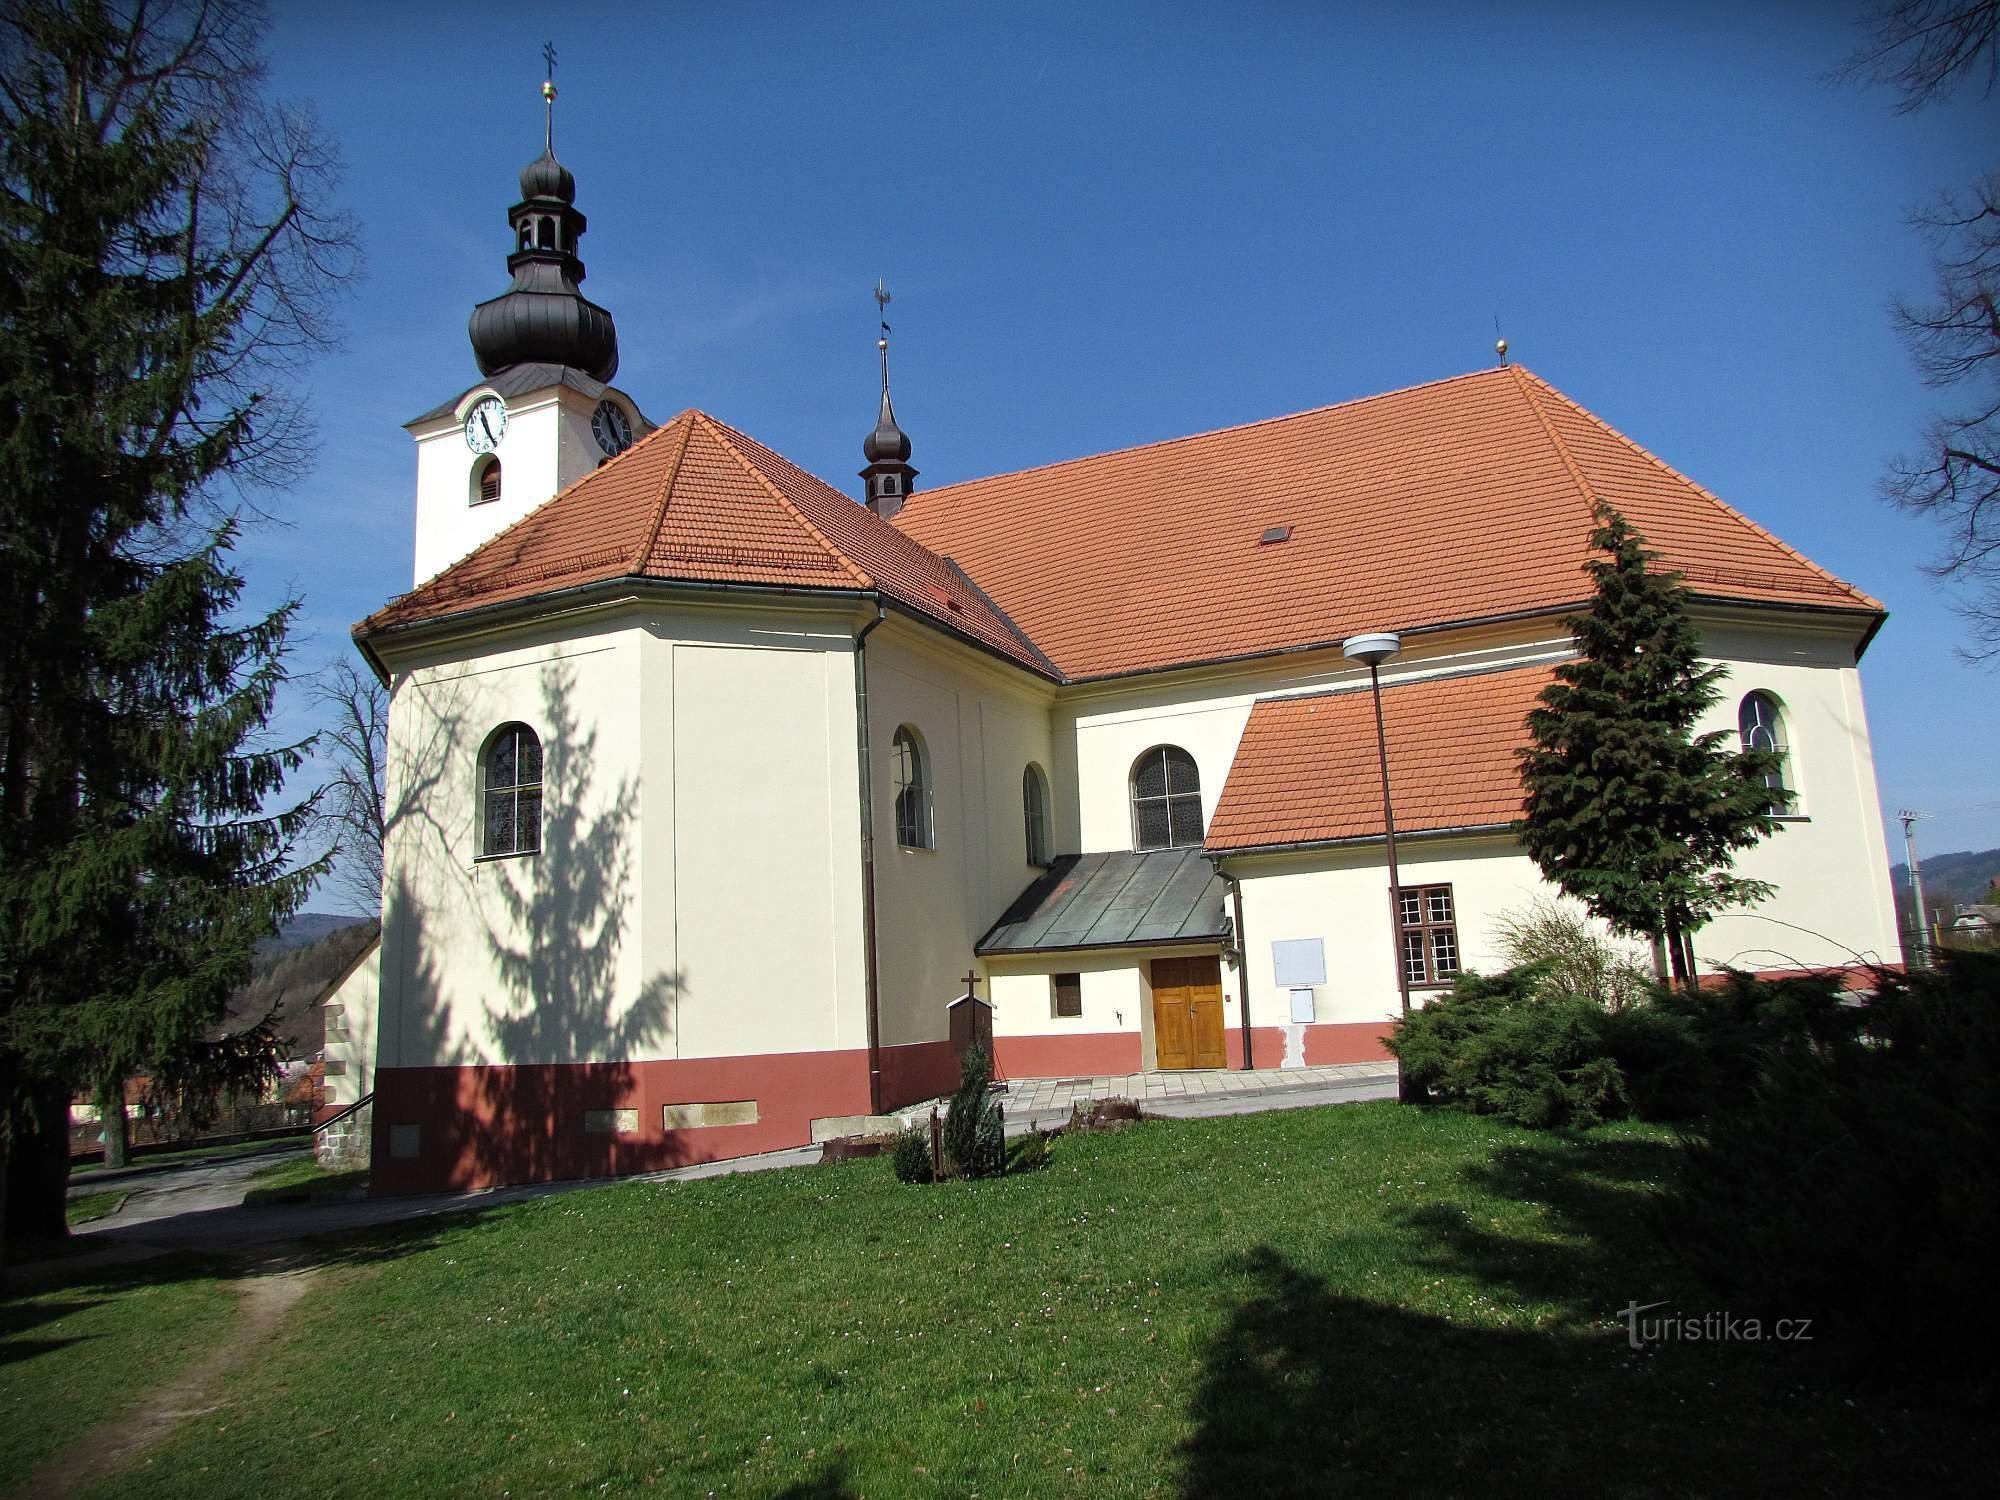 St. Wenceslaskerk in Brum